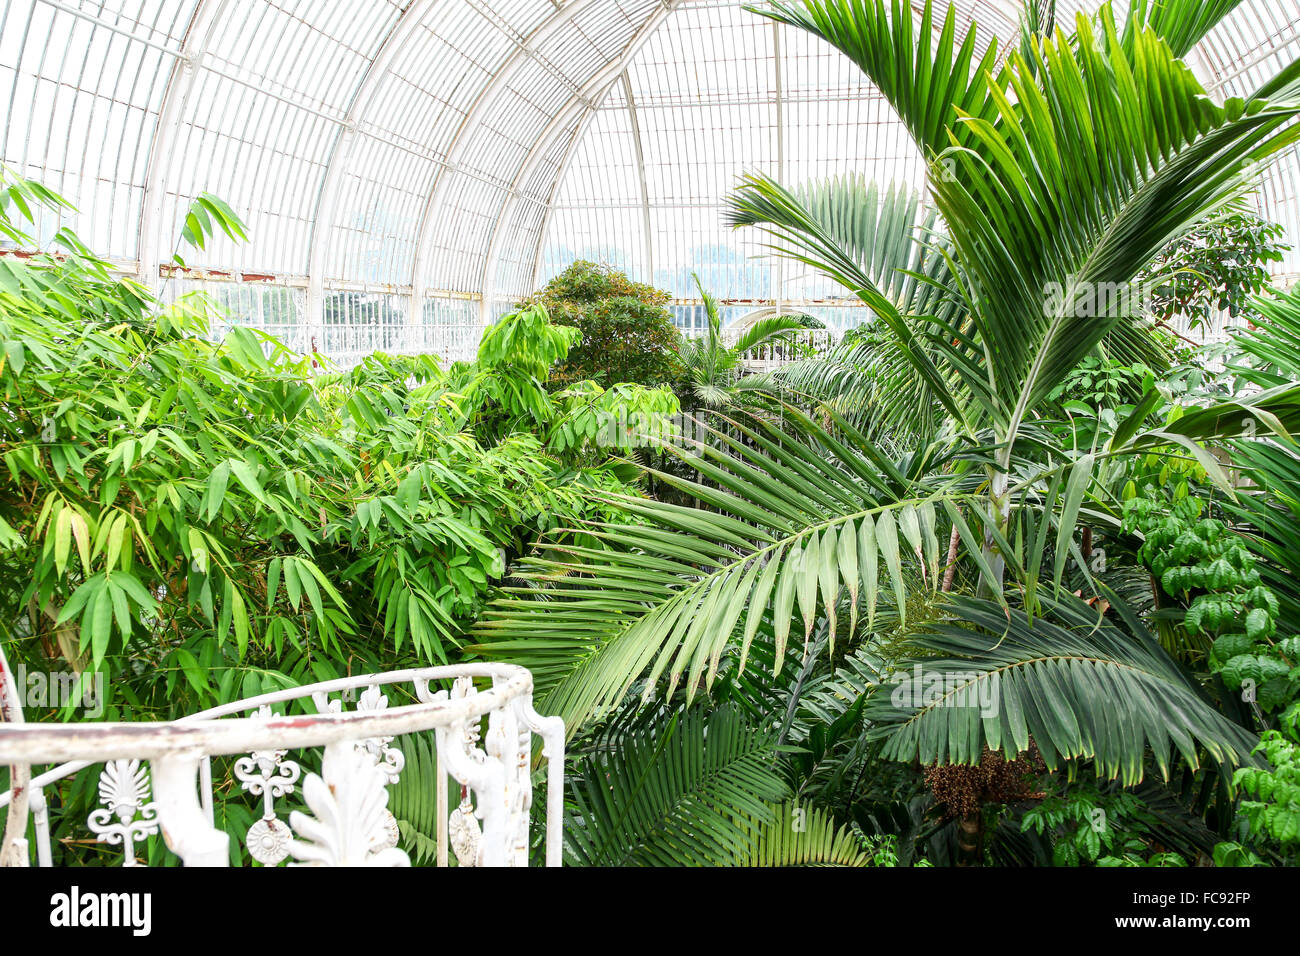 Les plantes à l'intérieur de la Palm House à Kew Gardens Royal Botanical Gardens London England UK Banque D'Images